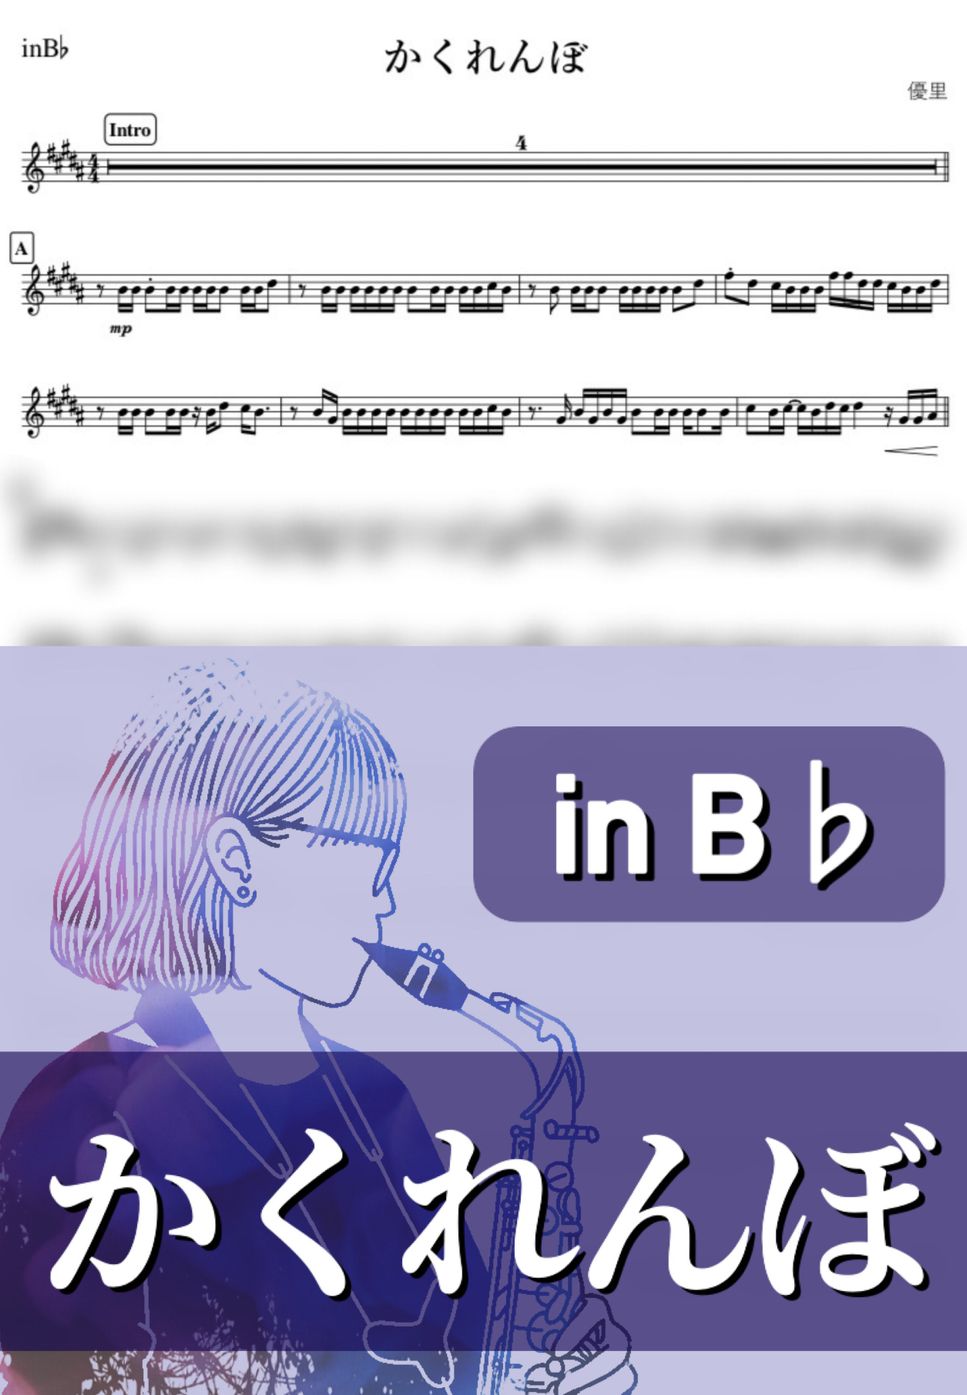 優里 - かくれんぼ (B♭) by kanamusic